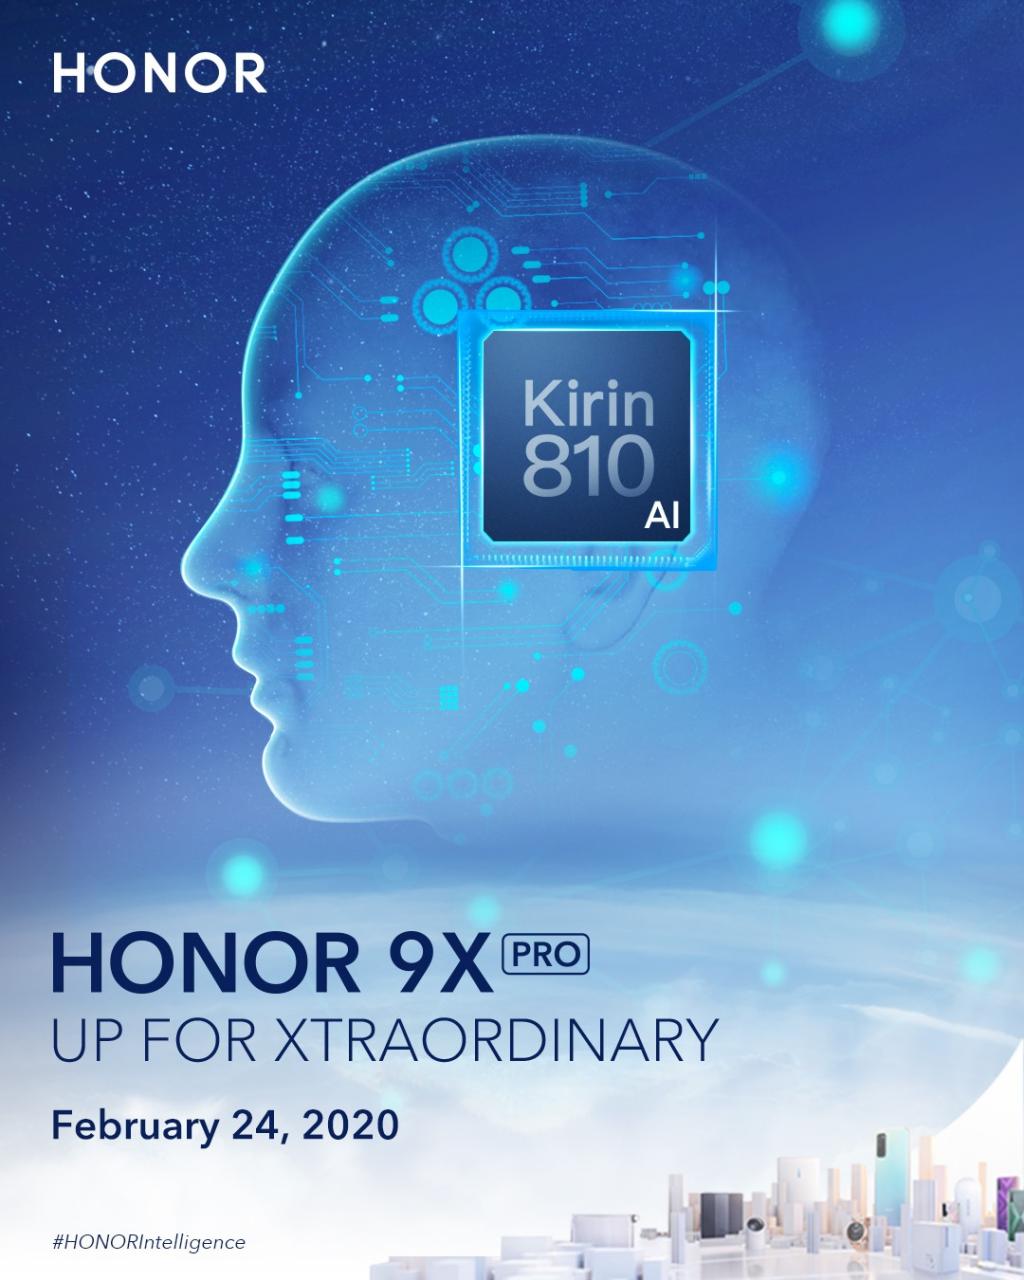 honor-9x-pro-img-1kirin810-1.jpg